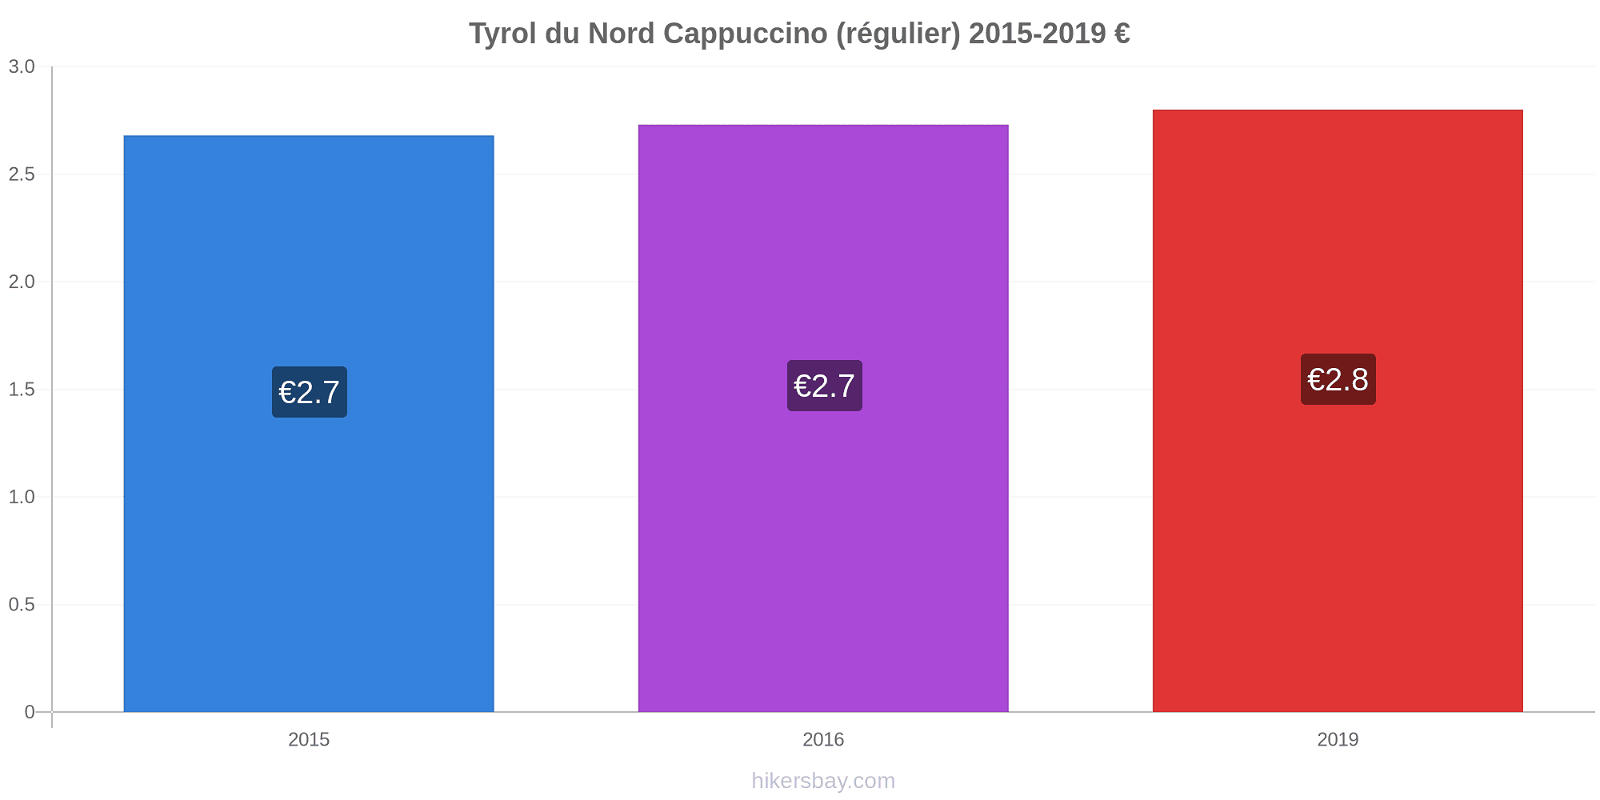 Tyrol du Nord changements de prix Cappuccino (régulier) hikersbay.com